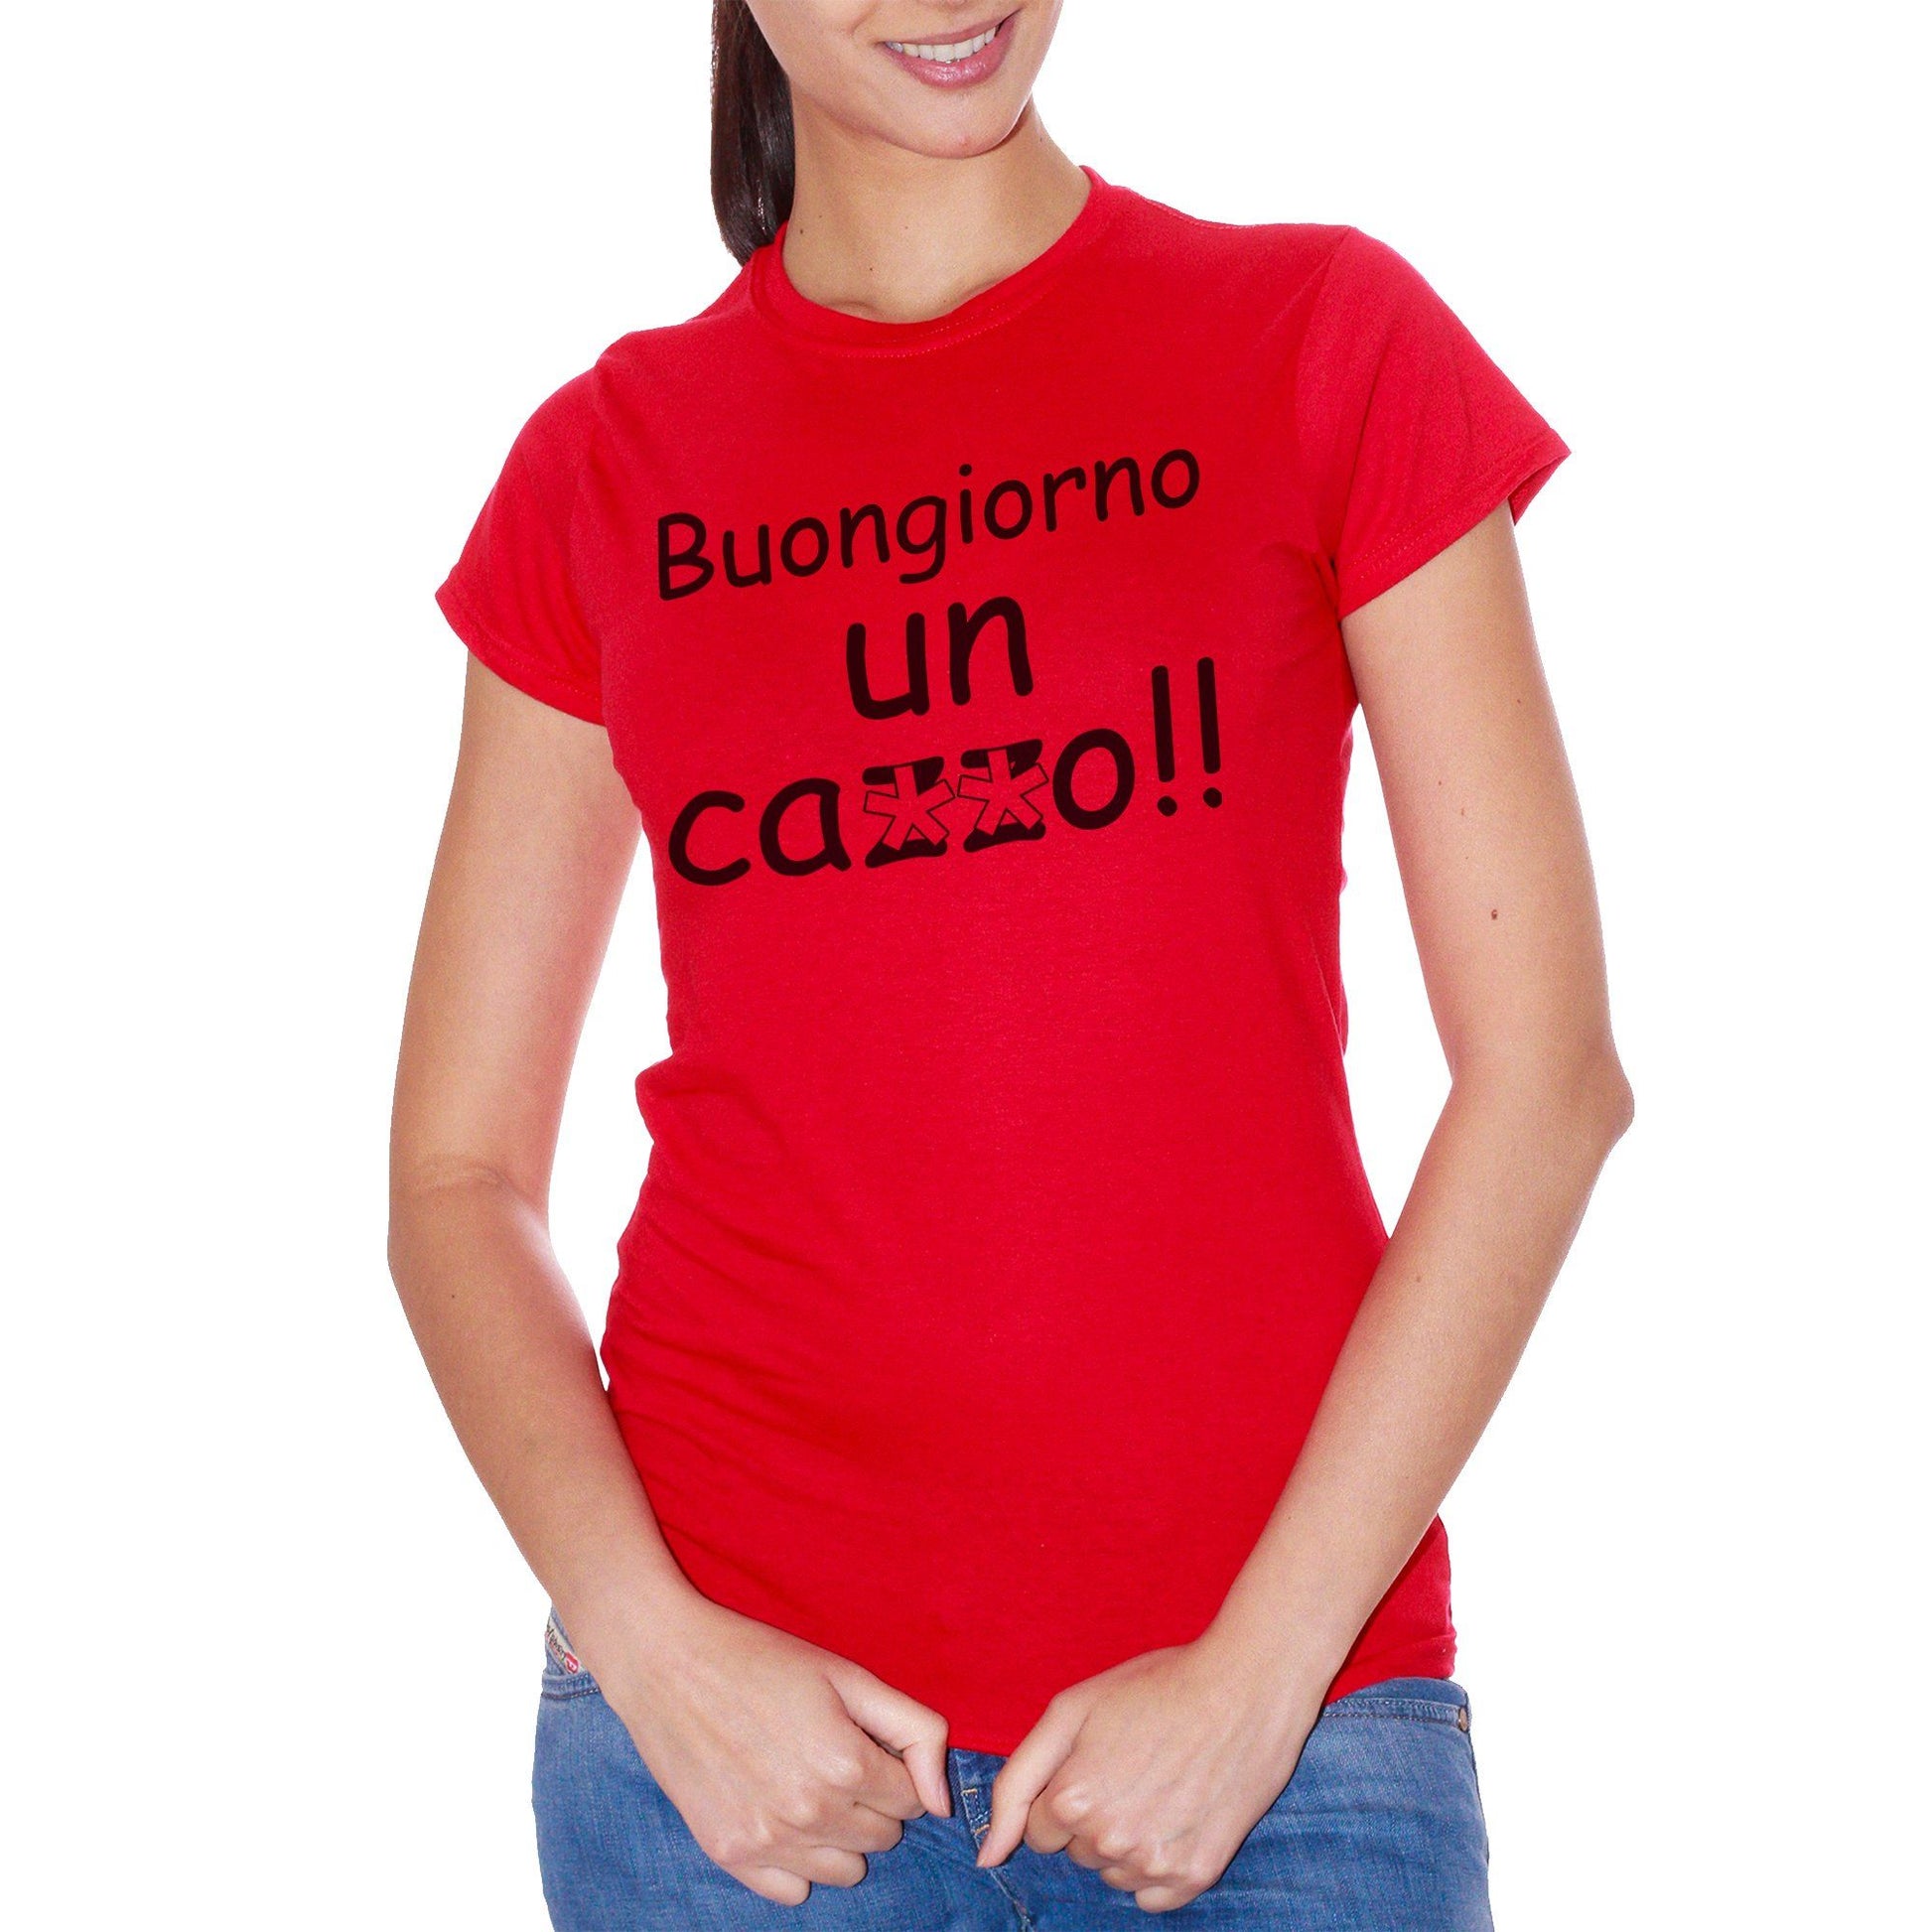 Red T-Shirt Fun Buongiorno - DIVERTENTE CucShop